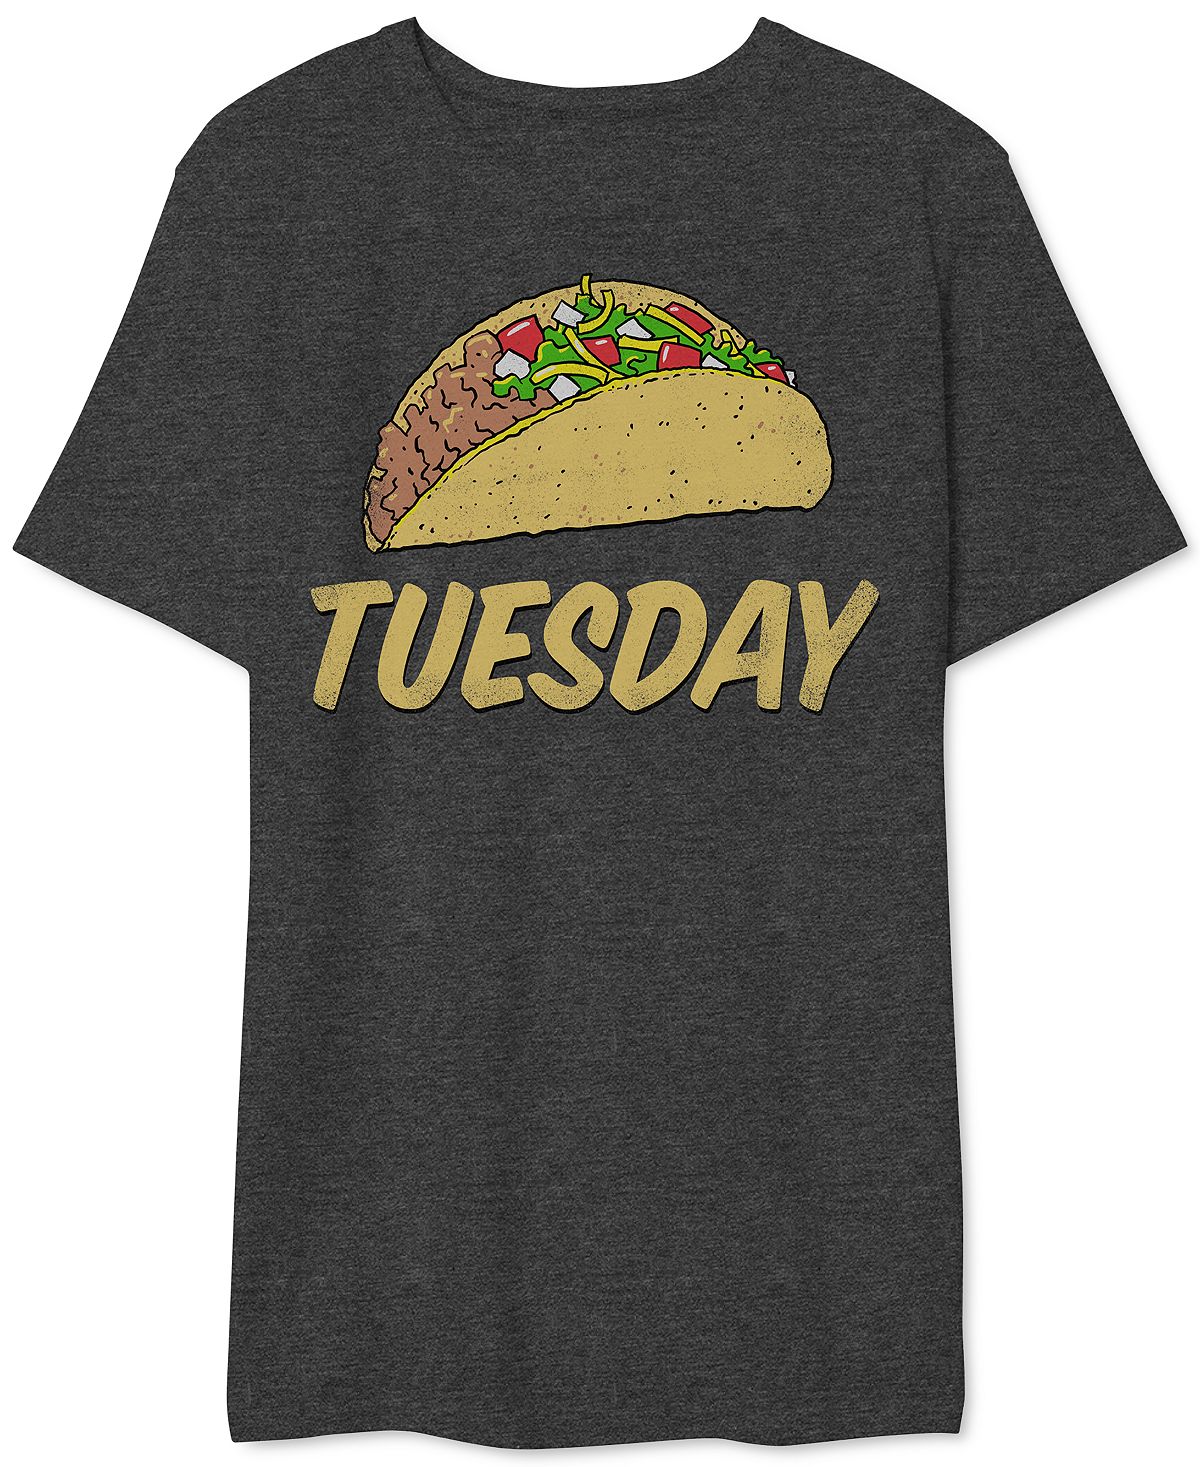 Мужская футболка с рисунком taco вторник AIRWAVES, мульти вторник